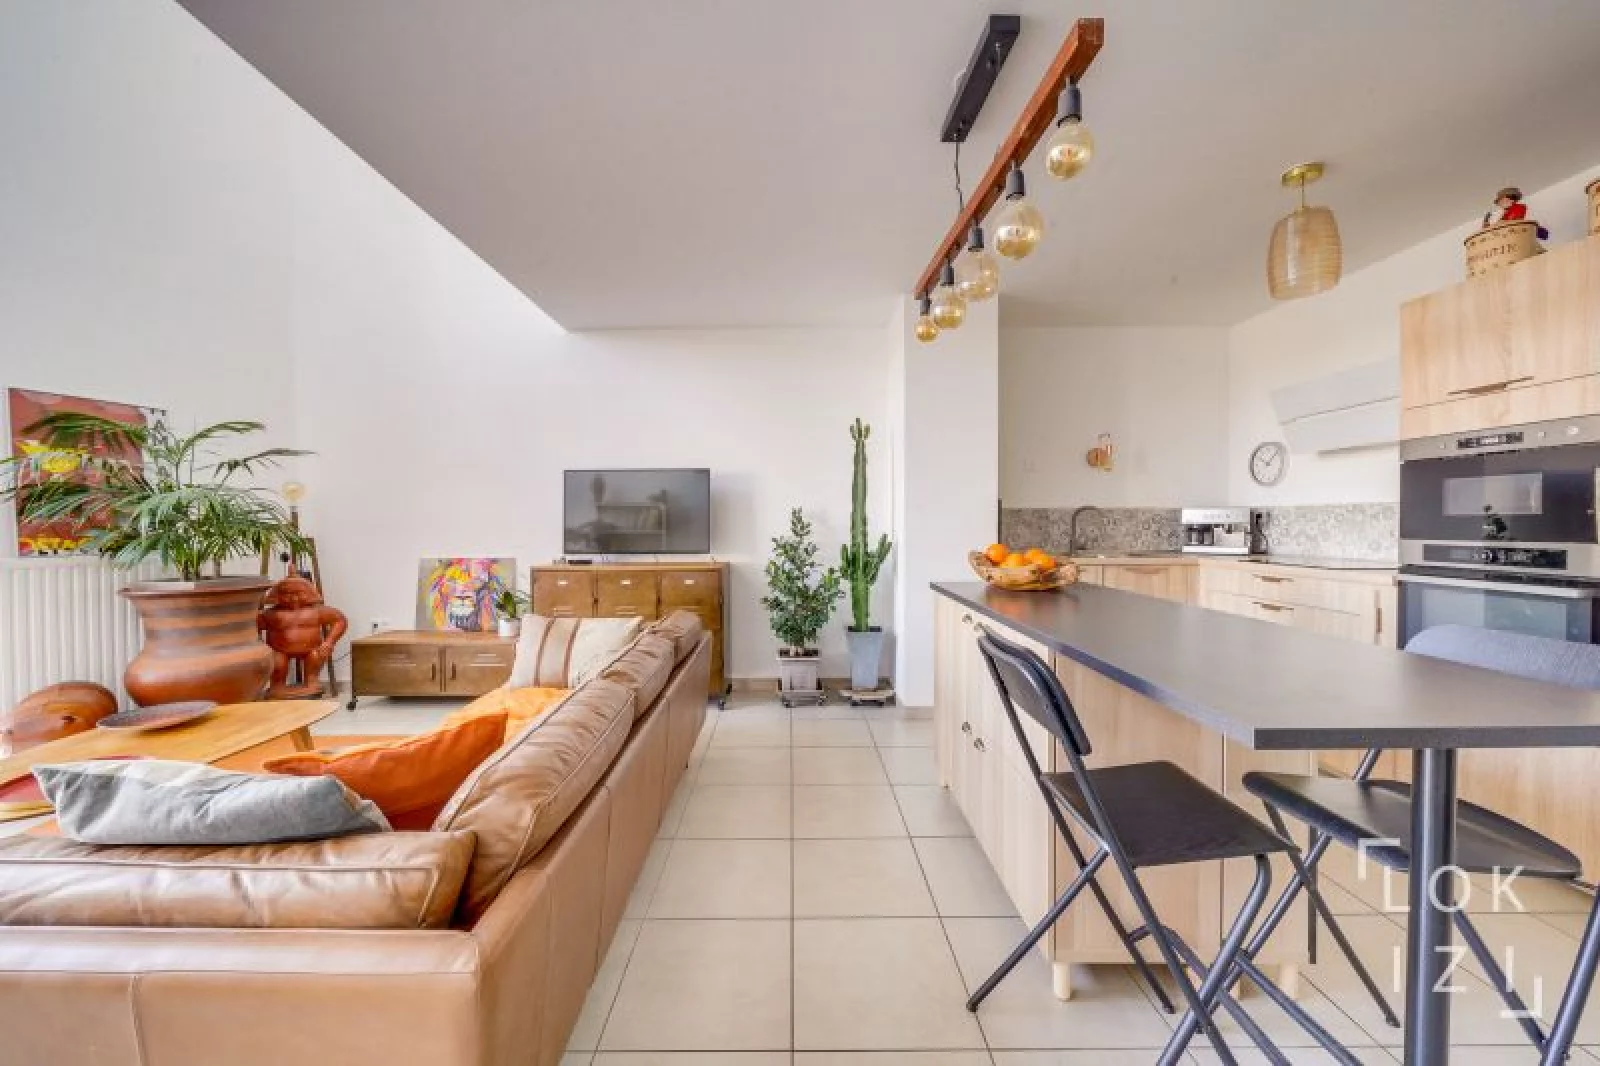 Location appartement duplex meublé 4 pièces 92m² (Bordeaux - Bassins à flot)